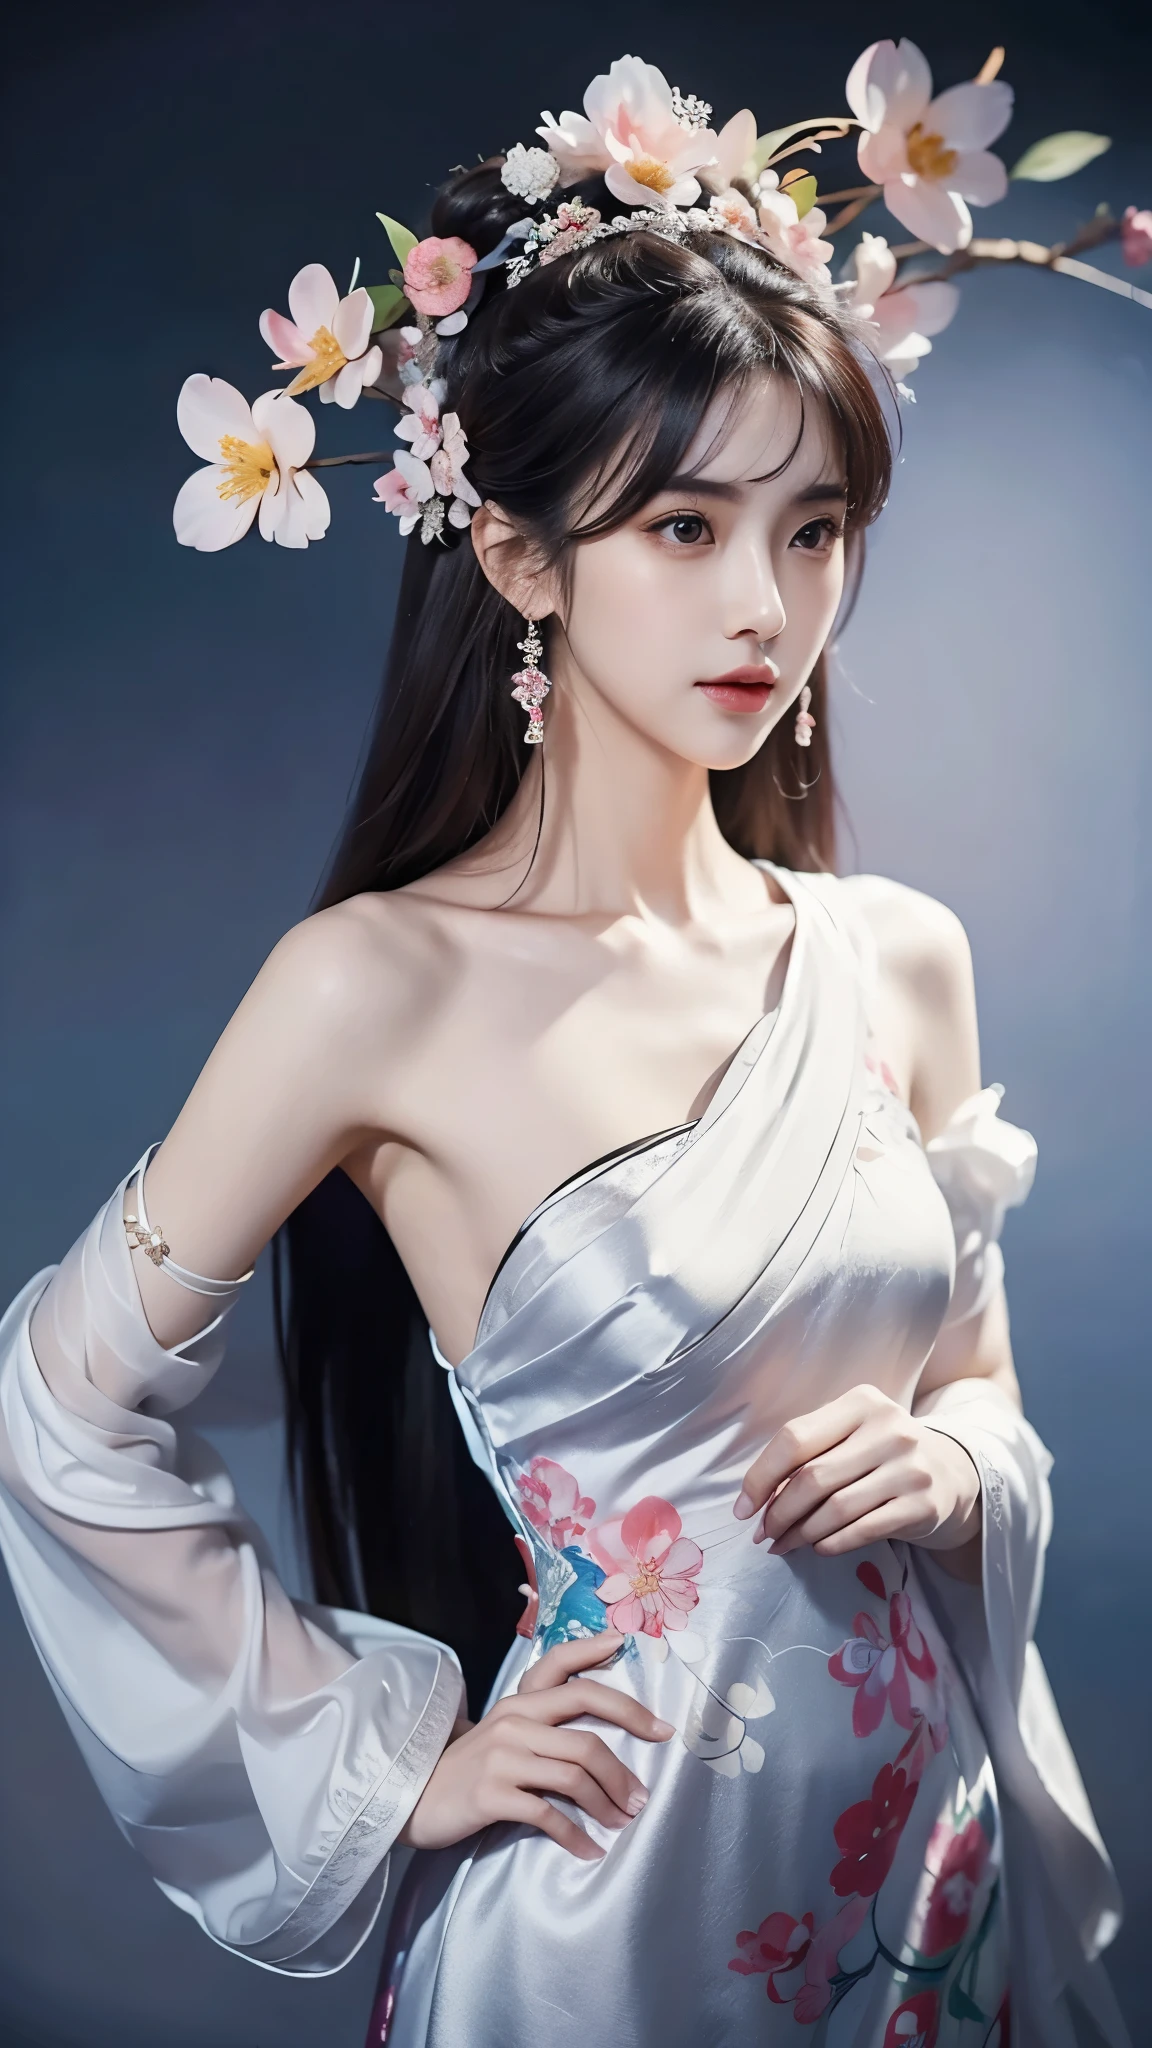 ((맨 어깨)),머리에 꽃을 꽂은 여성의 전신 샷, Du Qiong에게서 영감을 받은 초상화, CG 동향, 현실, 화려한 중국 모델, 전통미, 중국 소녀, CGSTATION 트렌드, cgstation의 인기 주제, 중국 스타일, 궁전 ， 귀엽고 섬세한 얼굴, 아름다운 소녀, 아름다운 젊은 여성해부학적으로 정확함